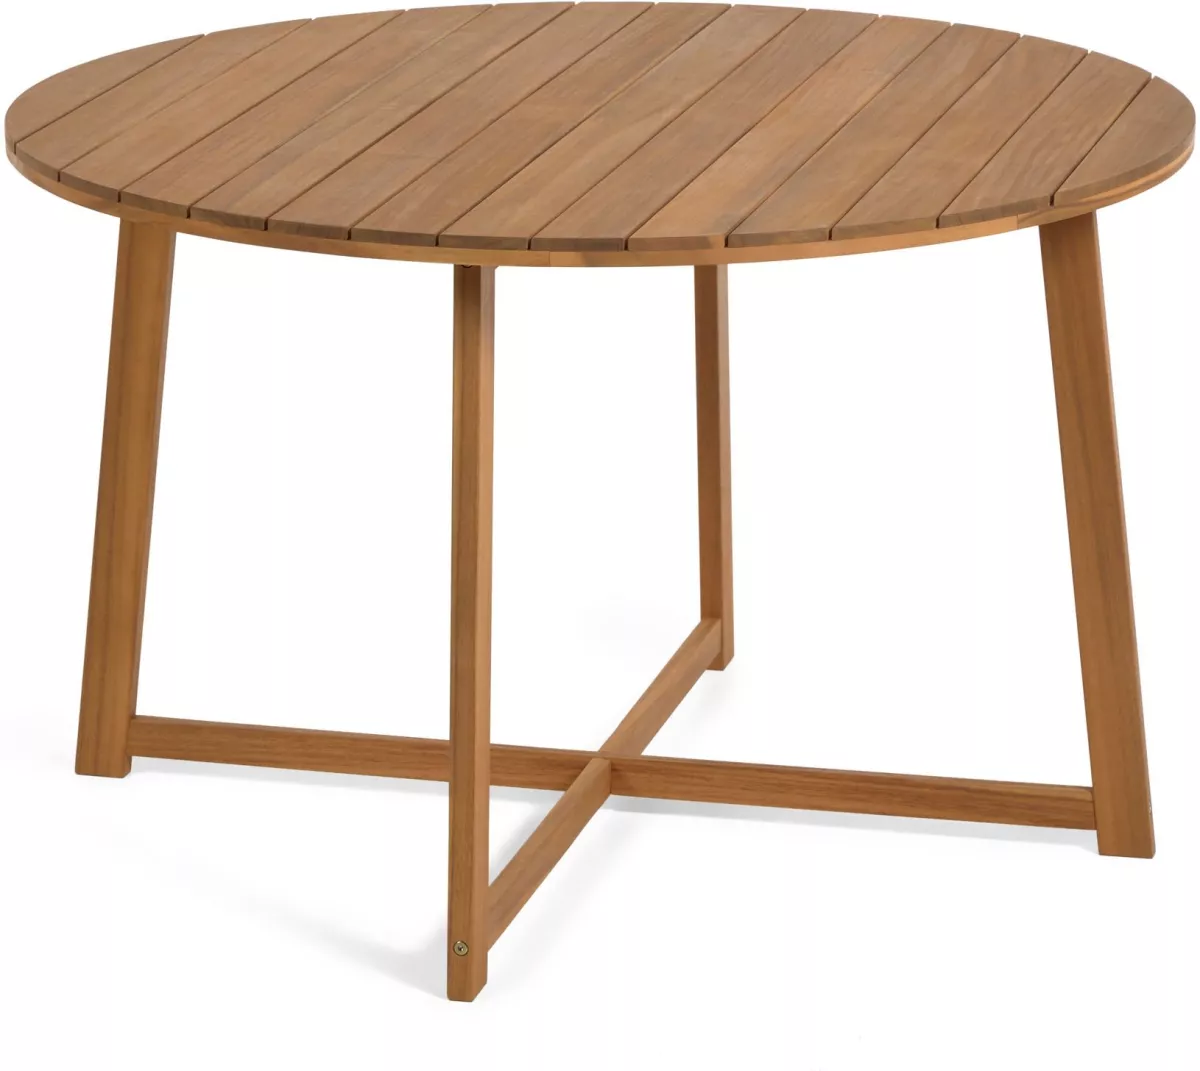 #2 - Dafne, Udendørs spisebord by LaForma (H: 75 cm. B: 120 cm. L: 120 cm., Natur)